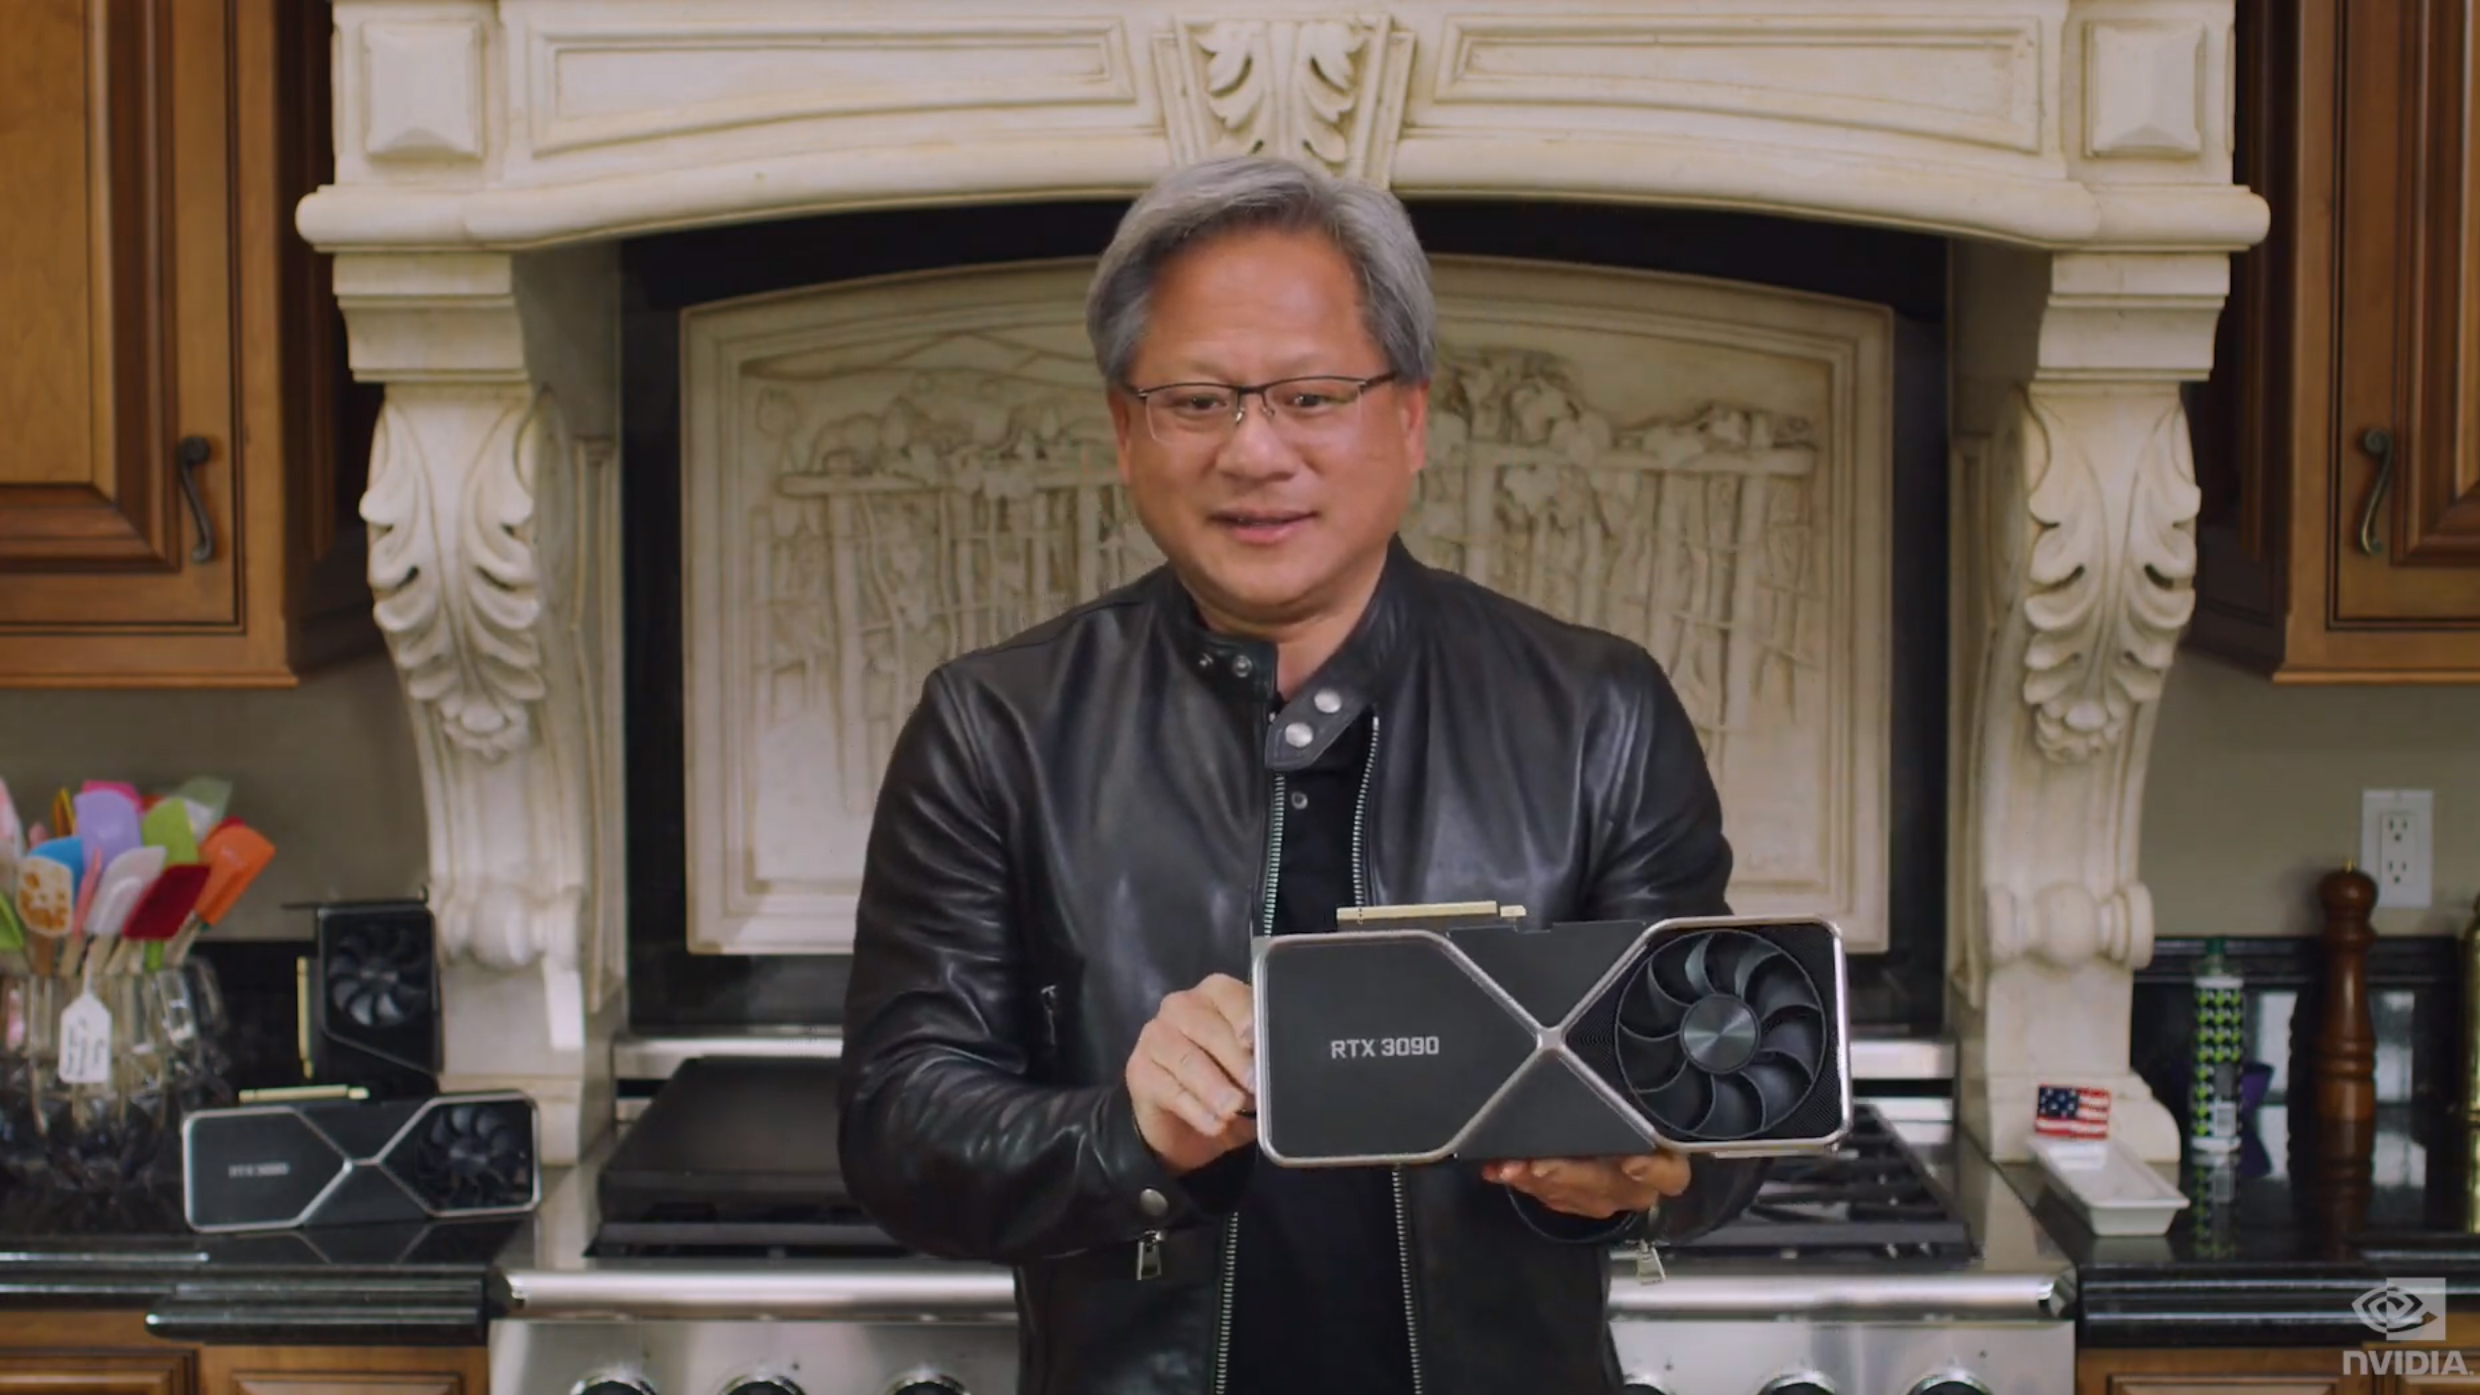 El director ejecutivo de Nvidia ignora la amenaza de la nueva y potente GPU de AMD